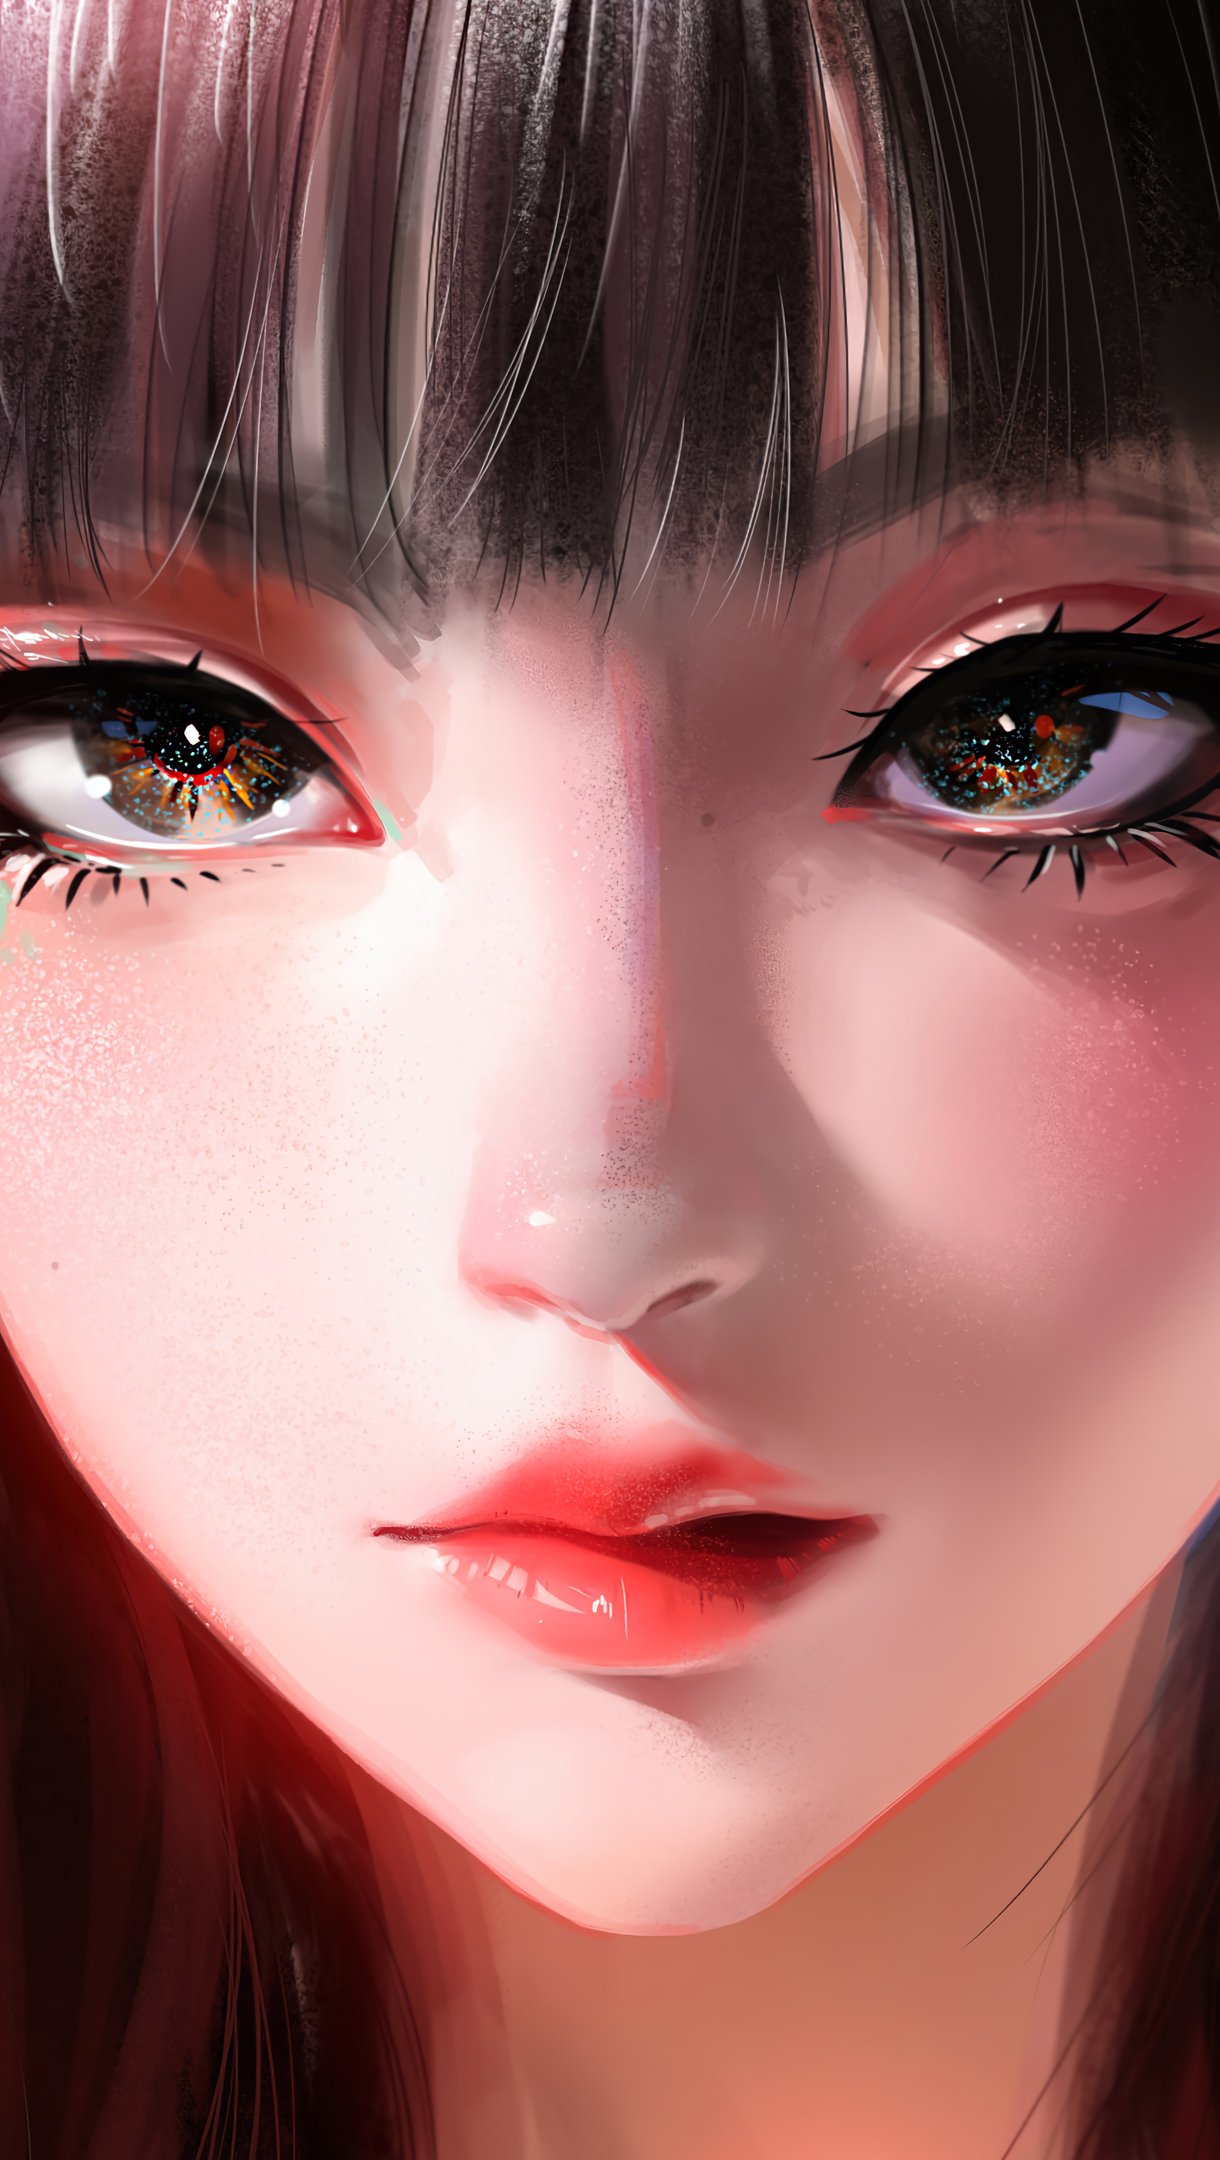 Anime girl Digital Art Wallpaper 4k Ultra HD